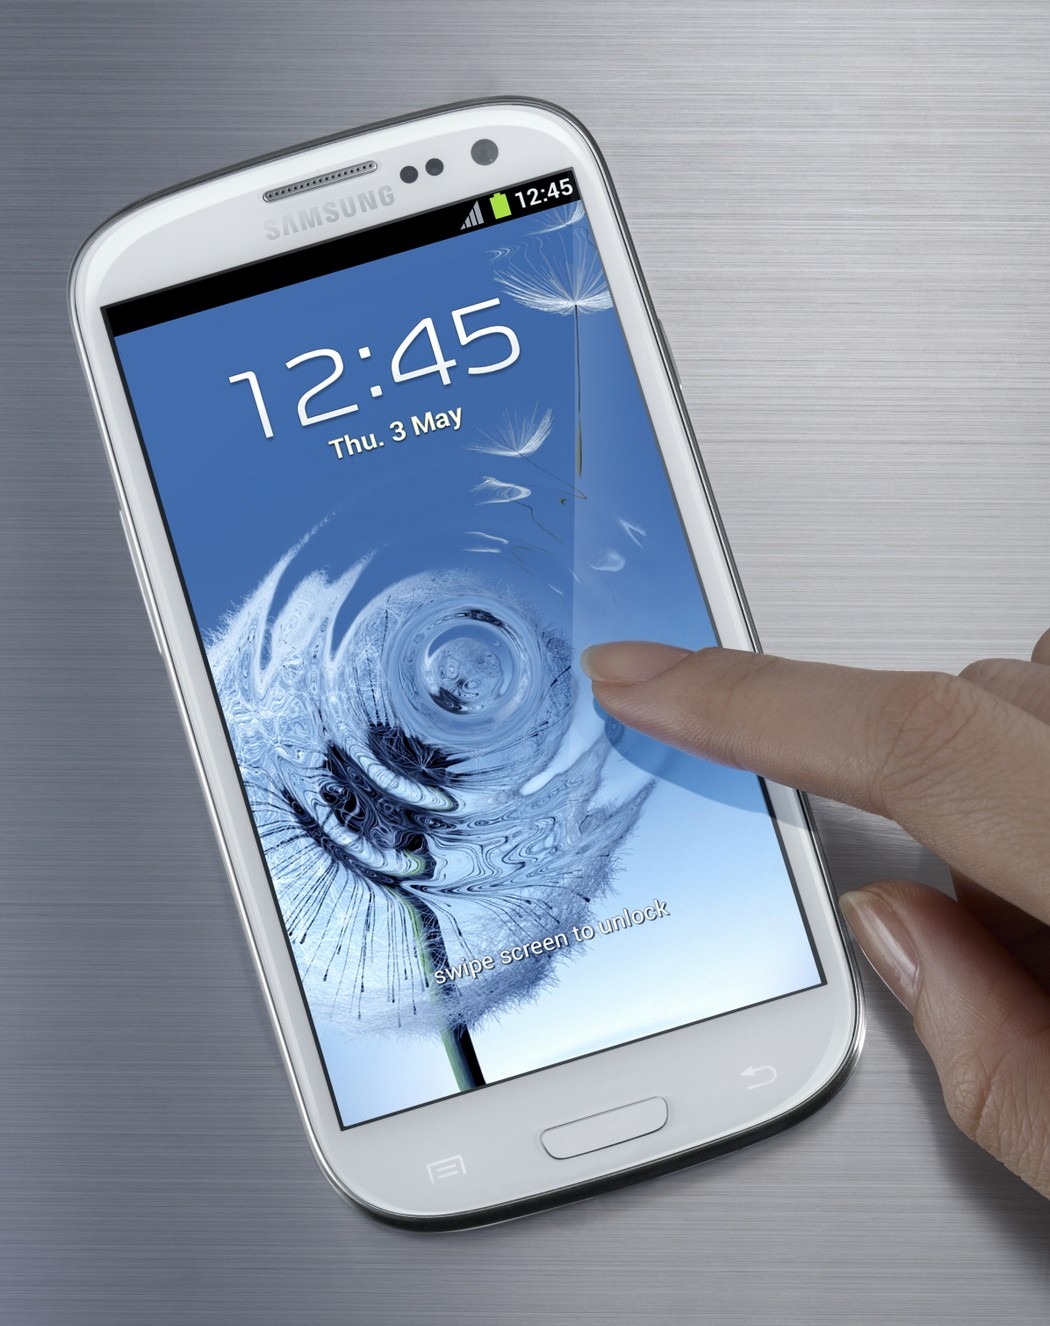 الهاتف Galaxy S III متاح للبيع في مصر من خلال سوق.كوم